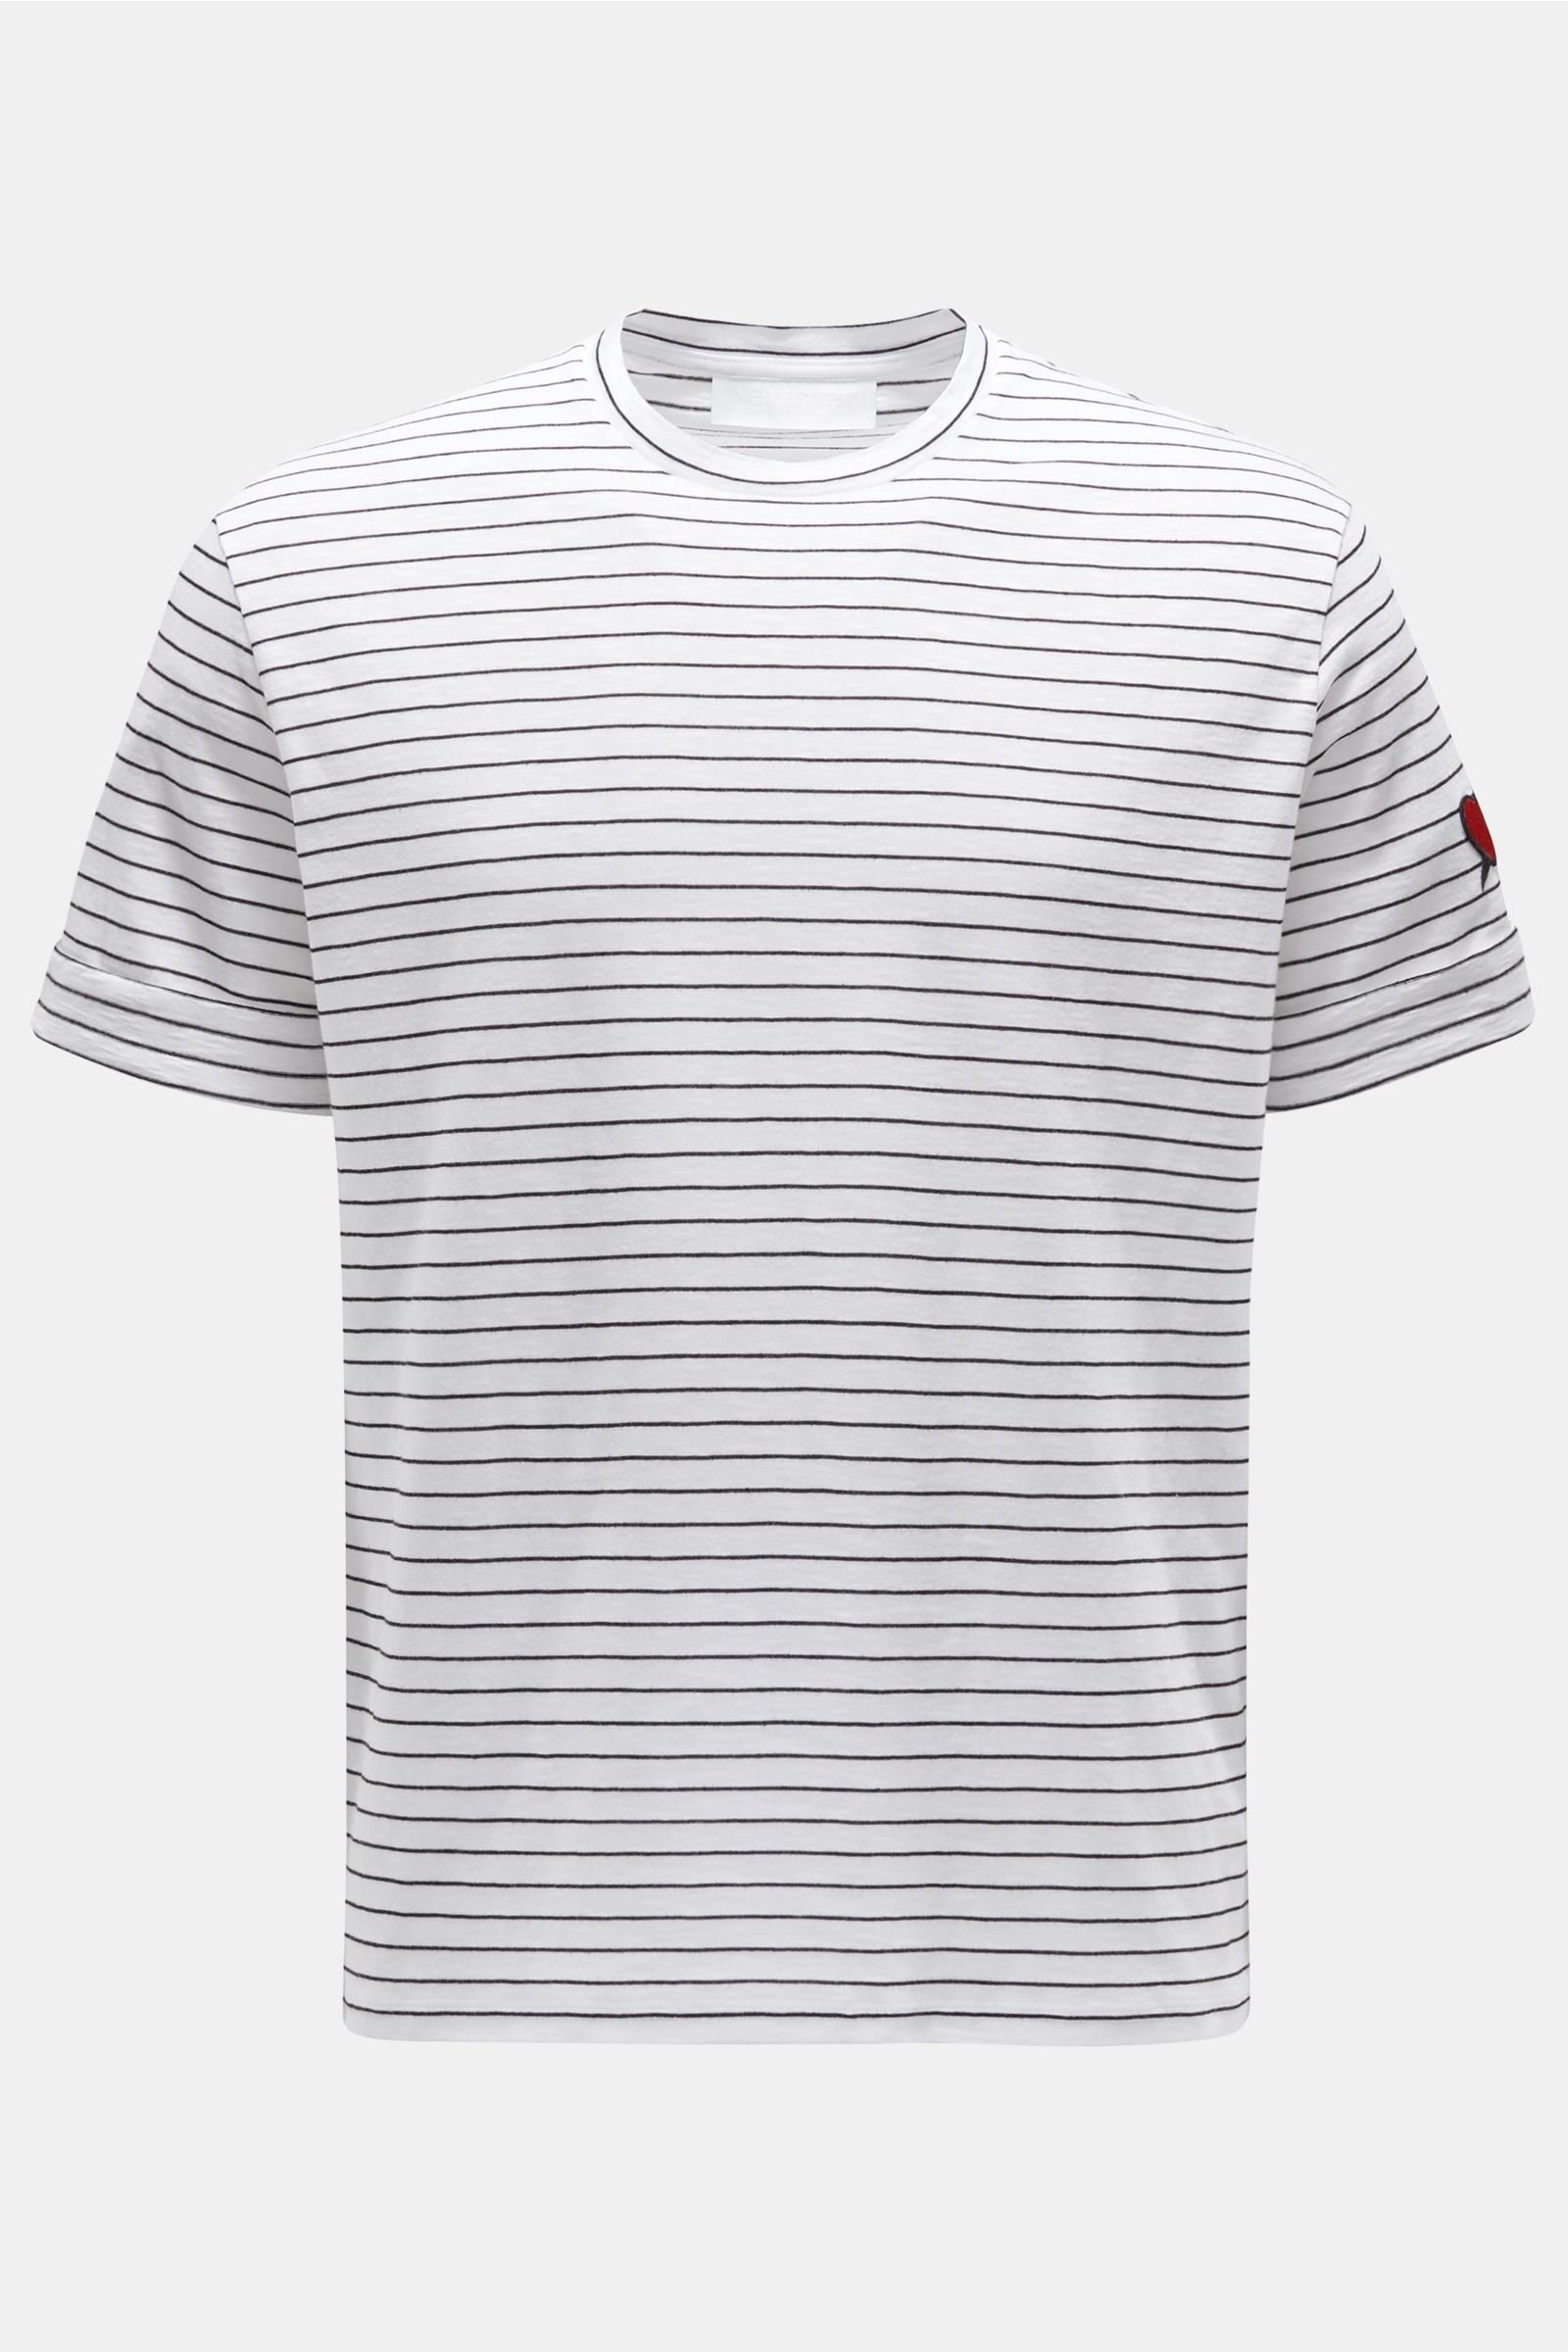 R-Neck T-Shirt weiß/schwarz gestreift